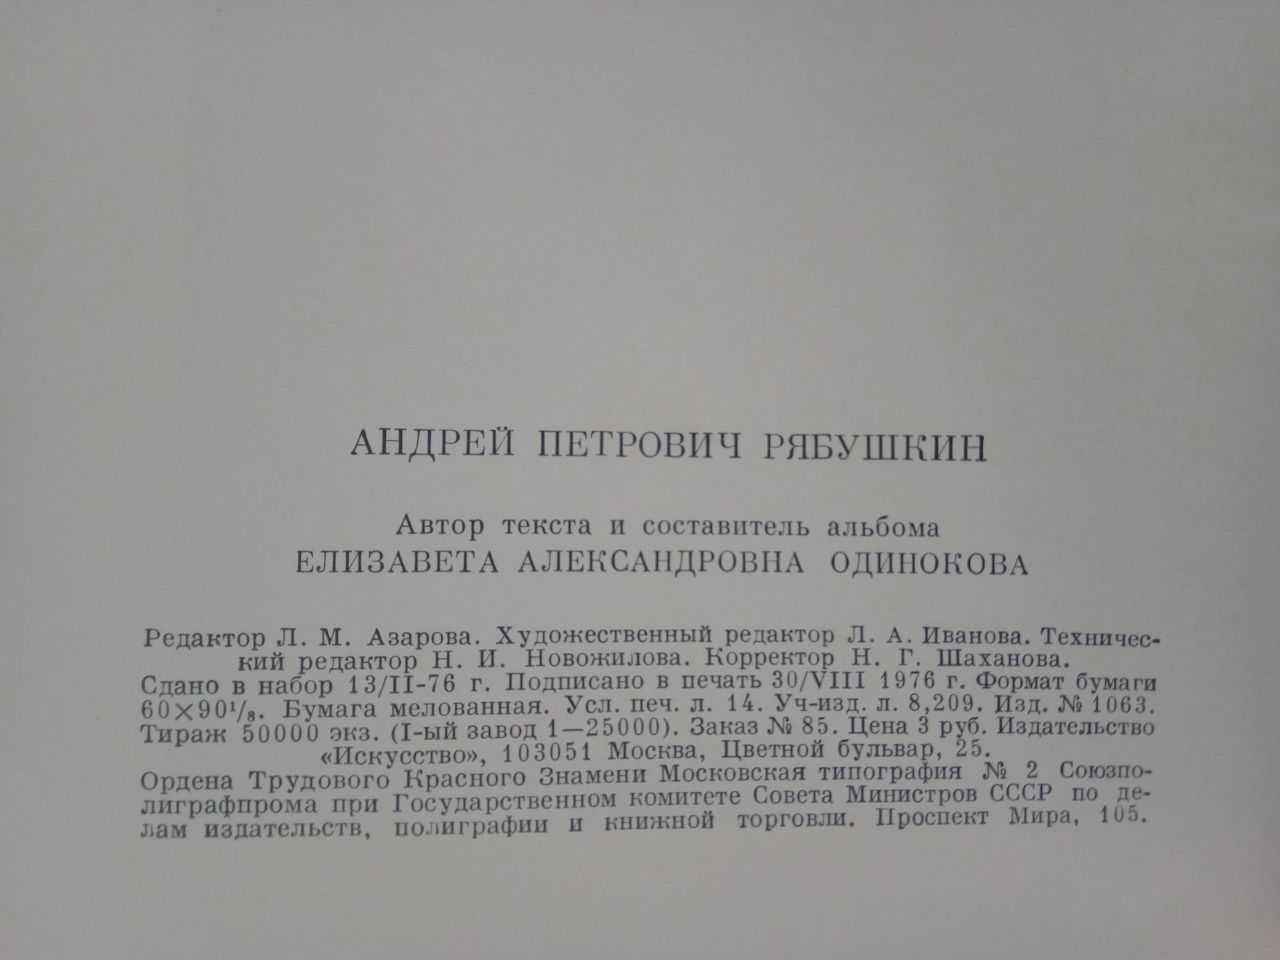 Книга "Рябушкин", Альбом репродукций, 1977 г.